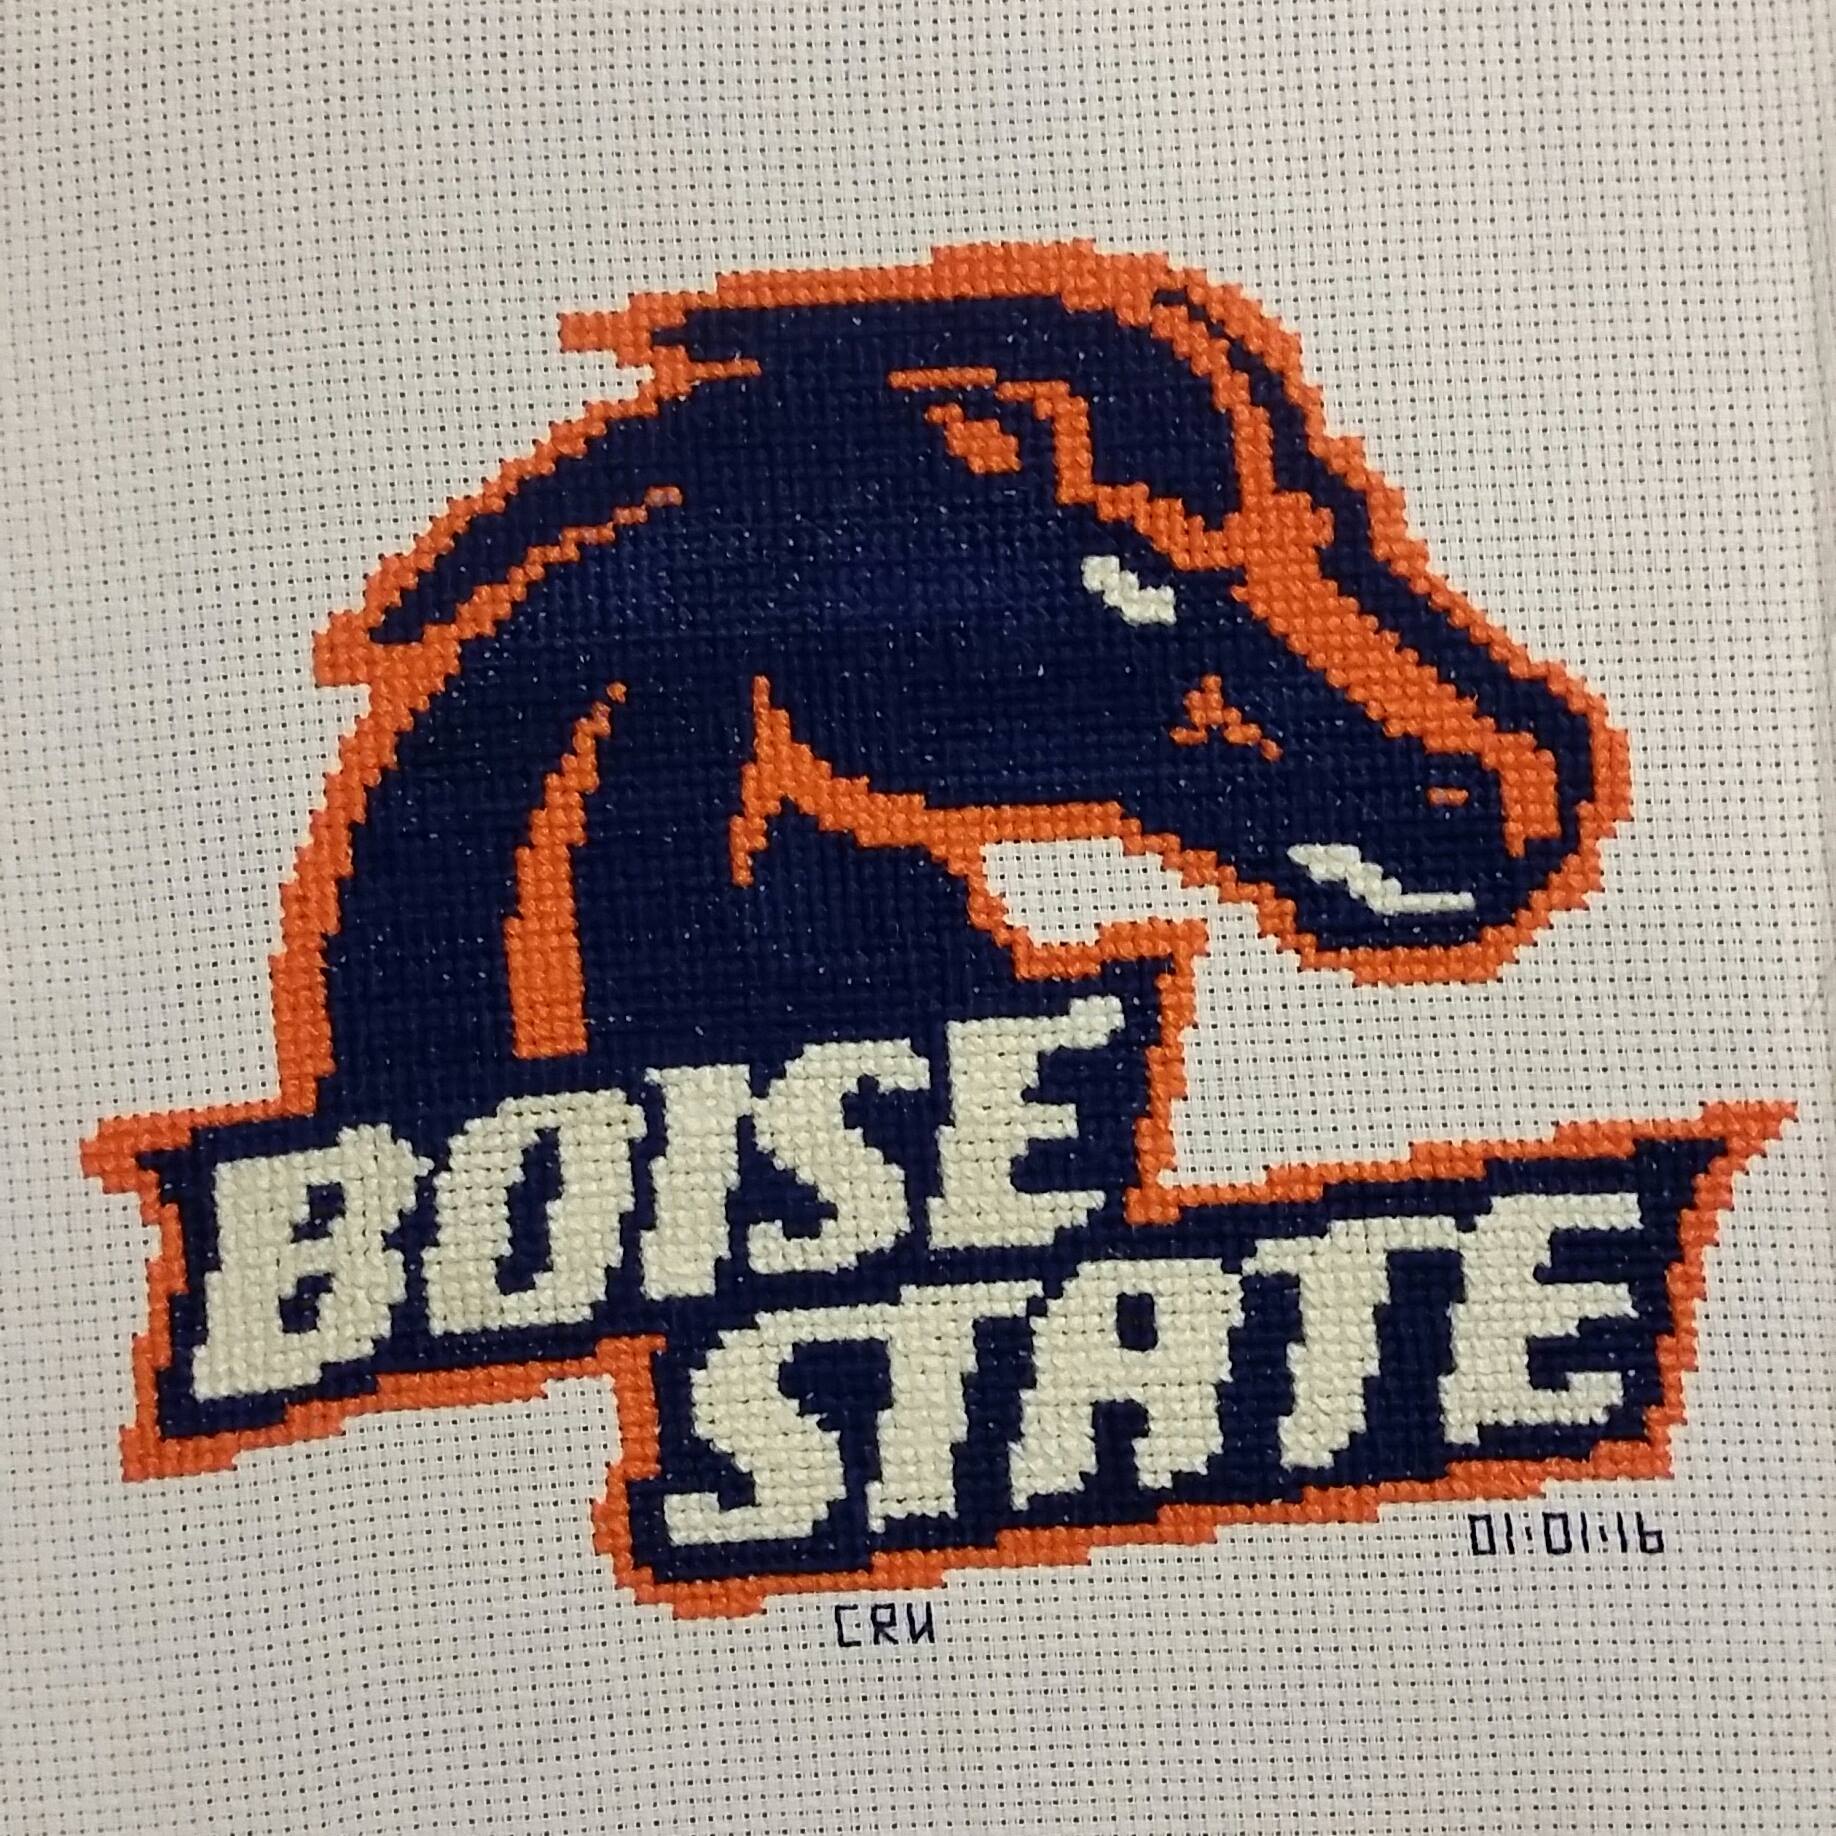 Logo del Boise State foto lavoro punto croce autrice Fan su Facebook Carrie Renae Uetz (1)